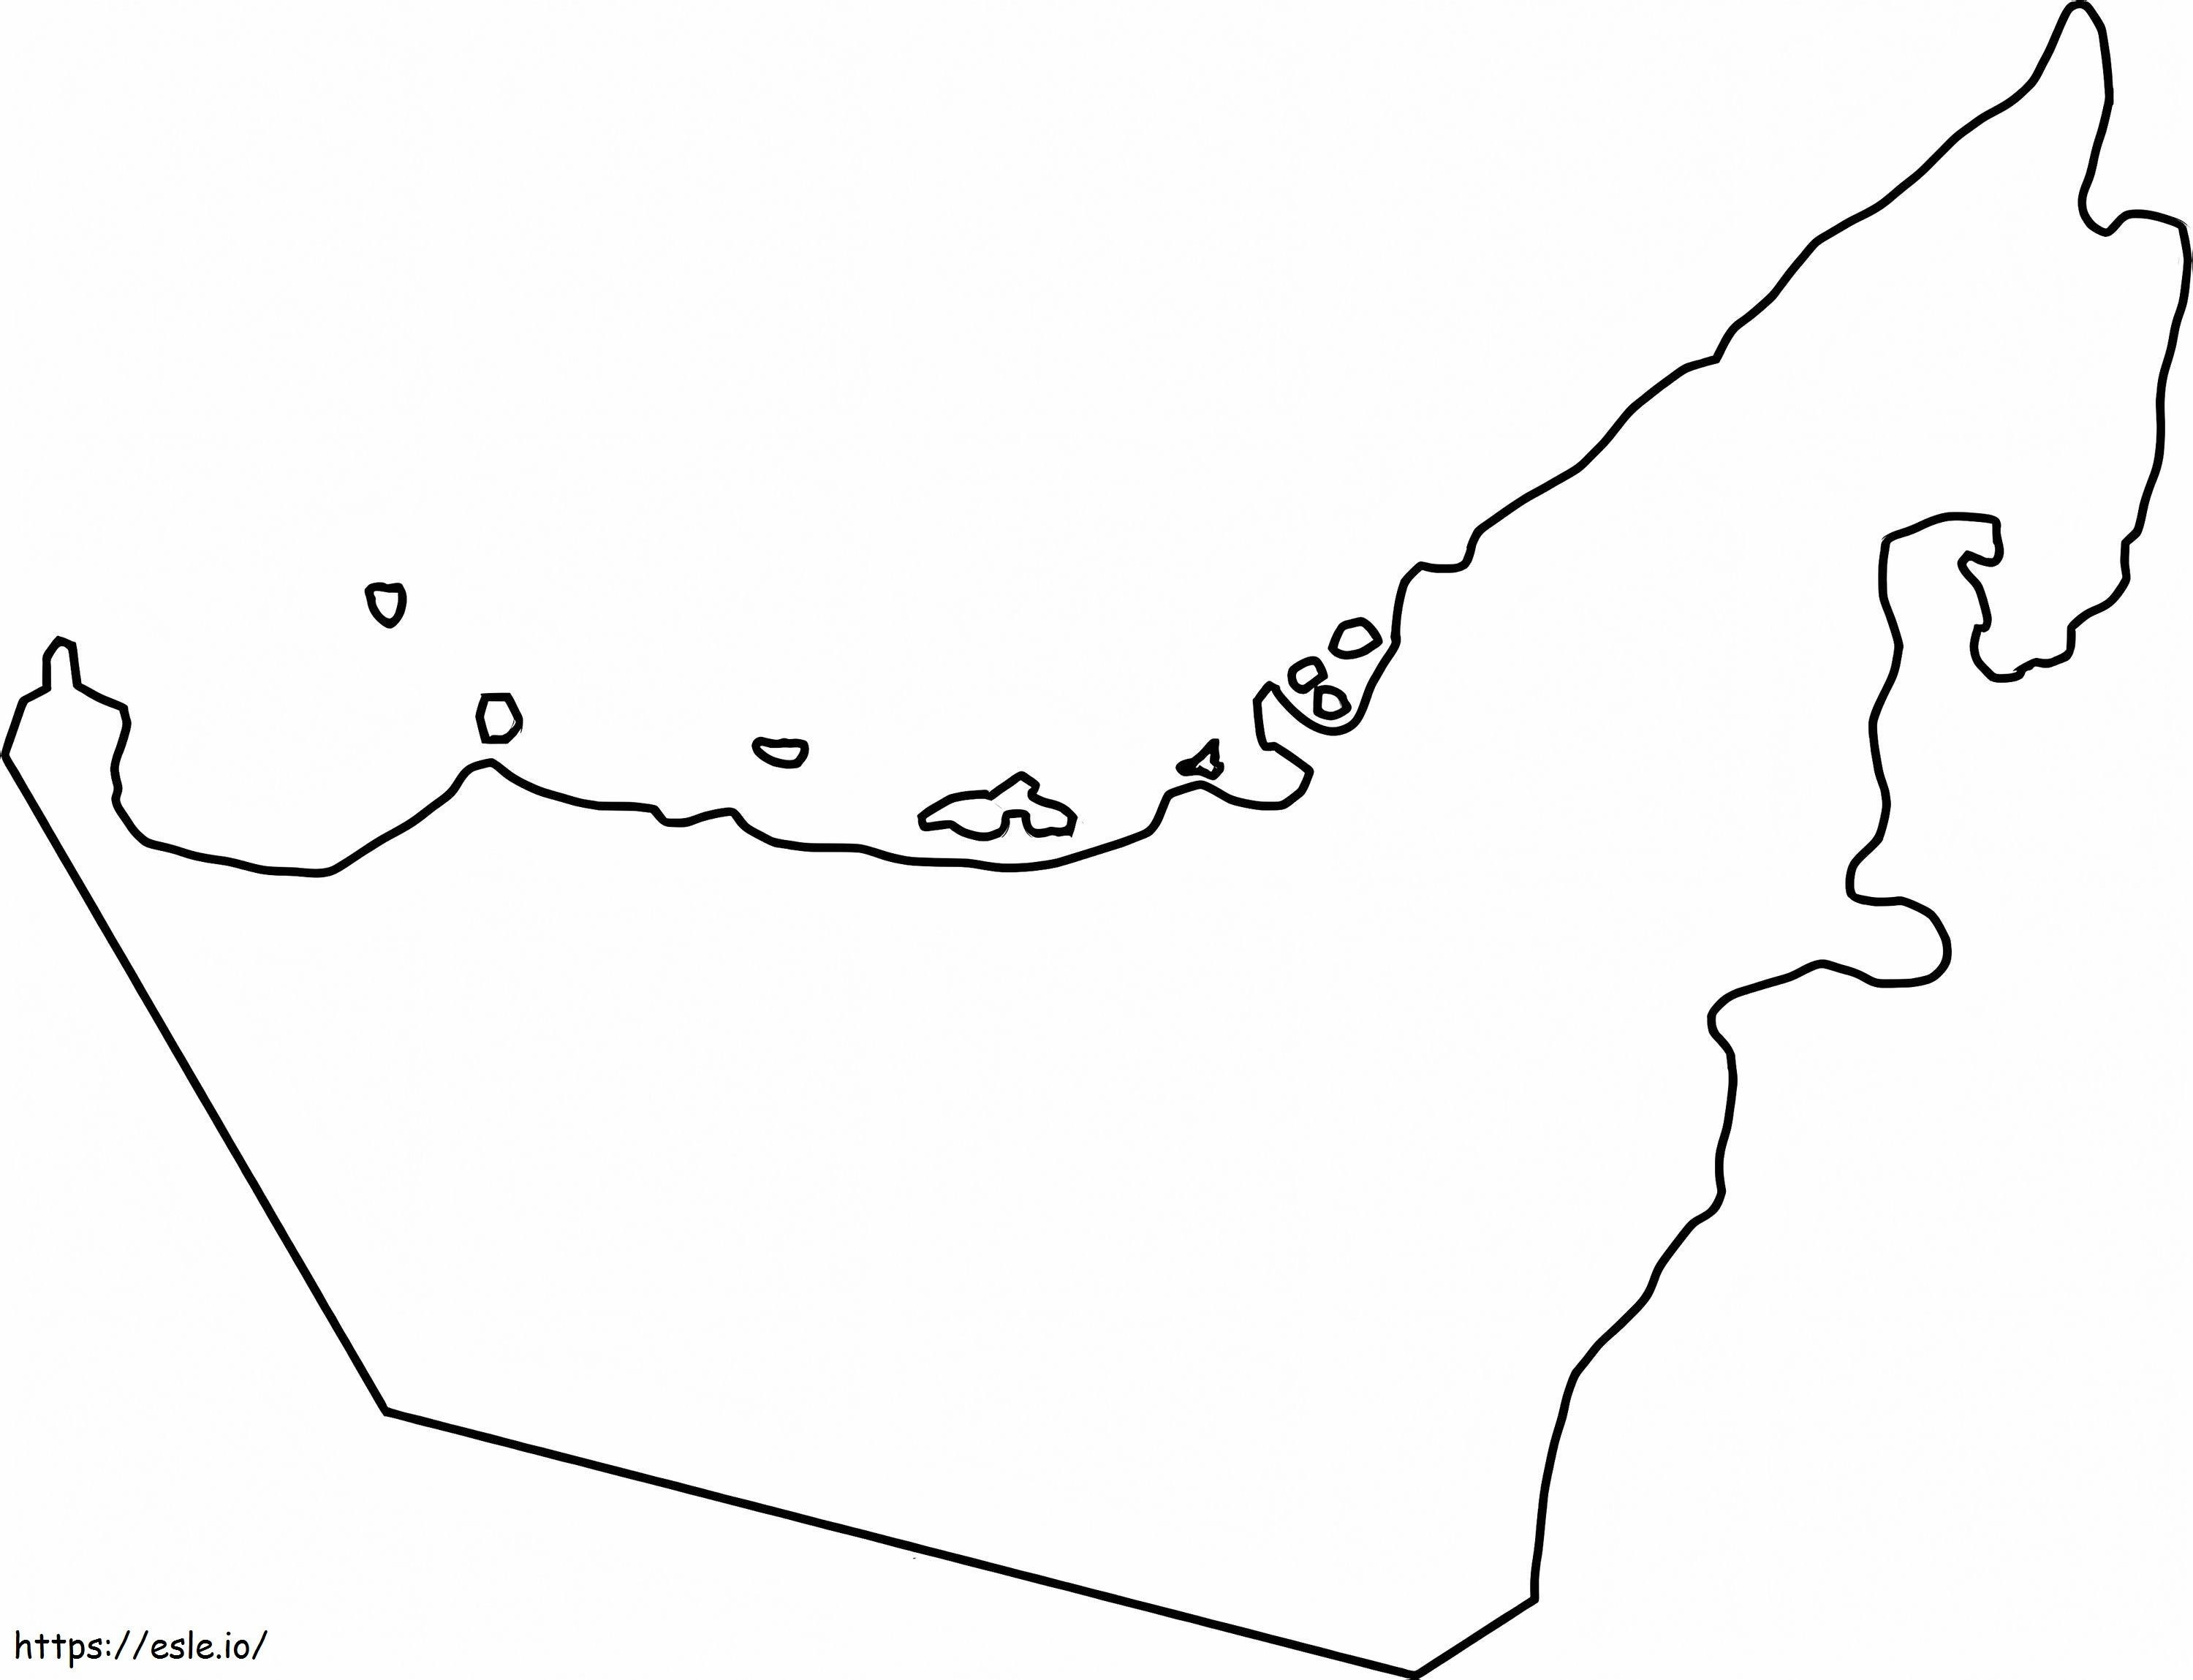 Mappa muta degli Emirati Arabi Uniti da colorare